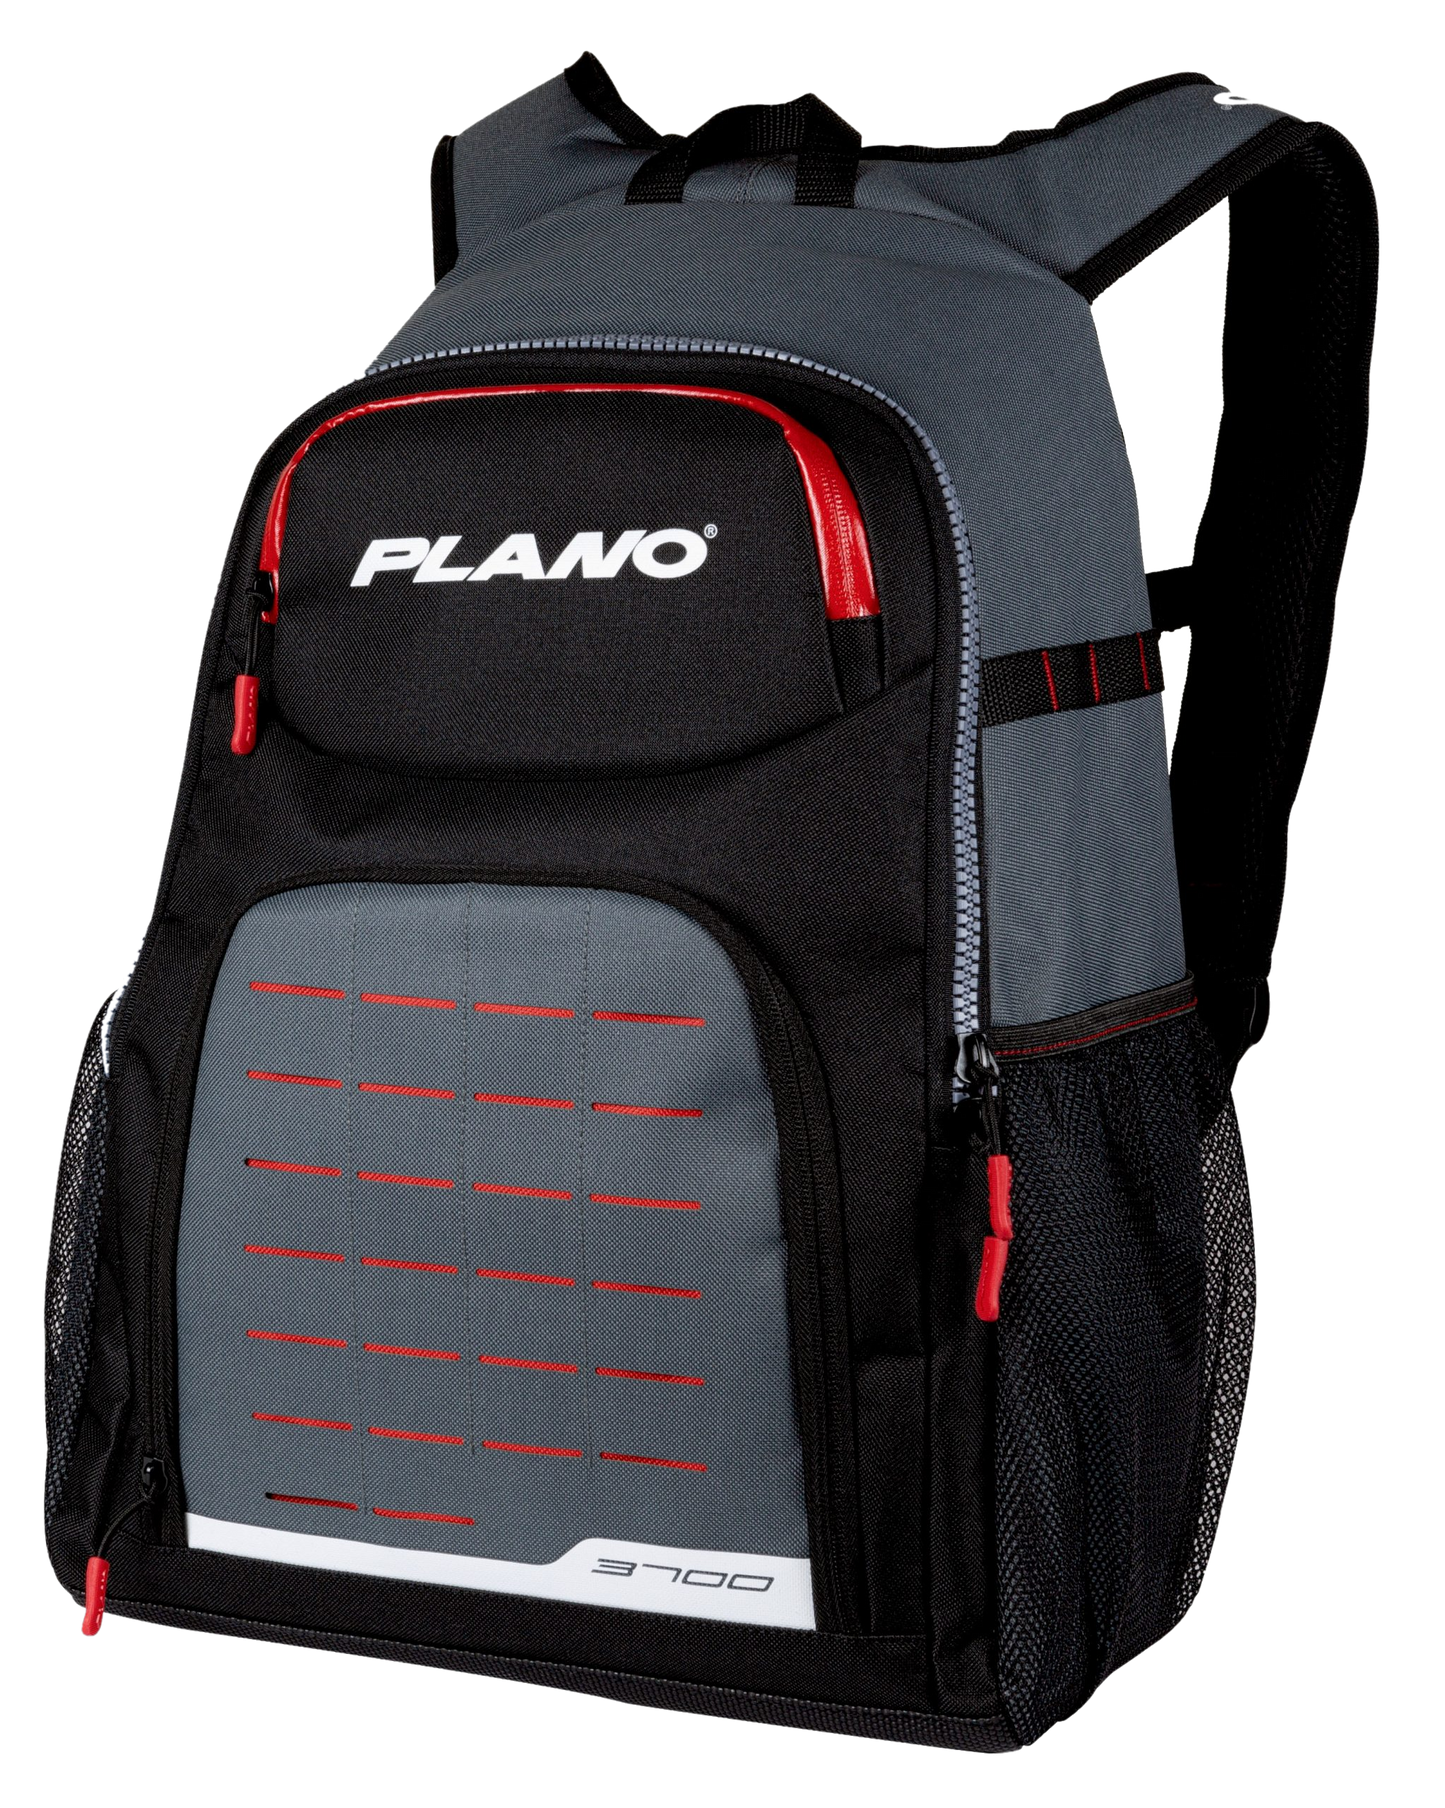 Plano Weekend Series Backpack Bag